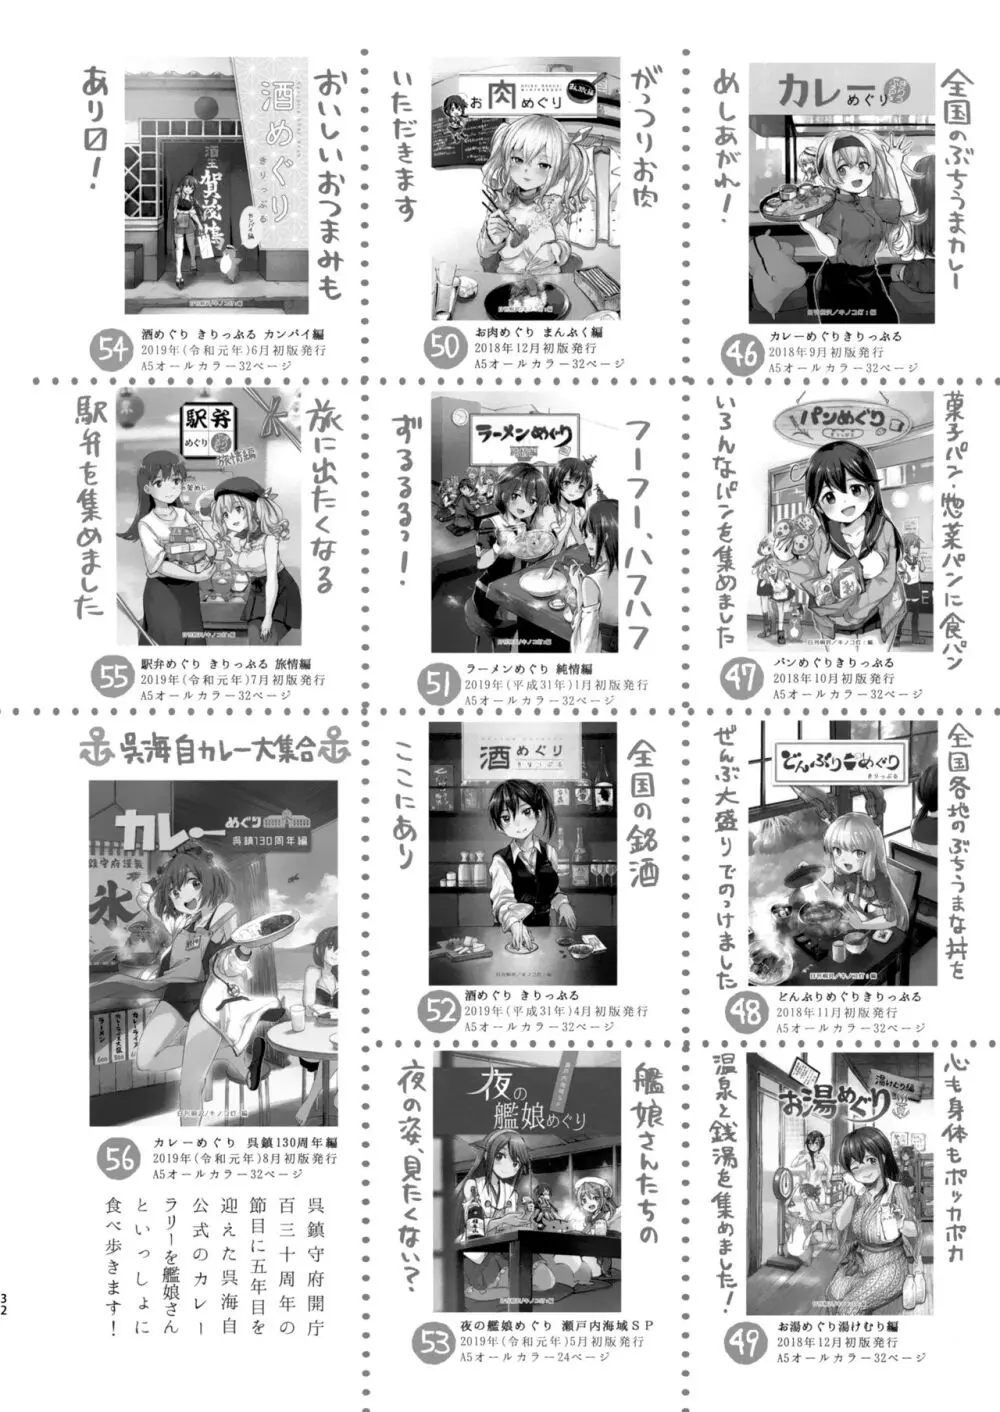 迅鯨ちゃんと 蜜月温泉 旅の宿 - page31